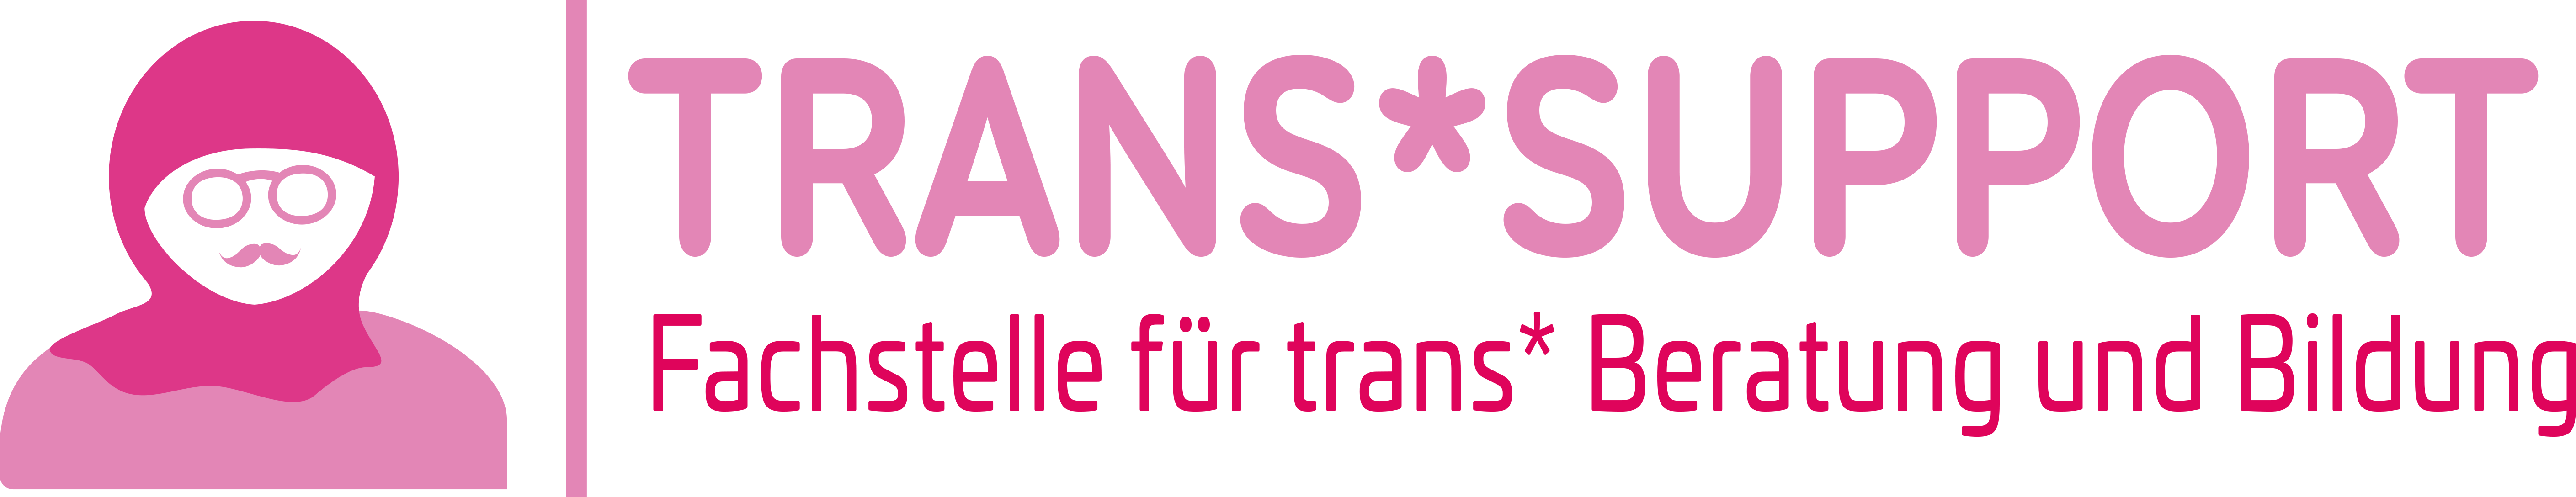 Trans*support | Fachstelle für trans* Beratung und Bildung